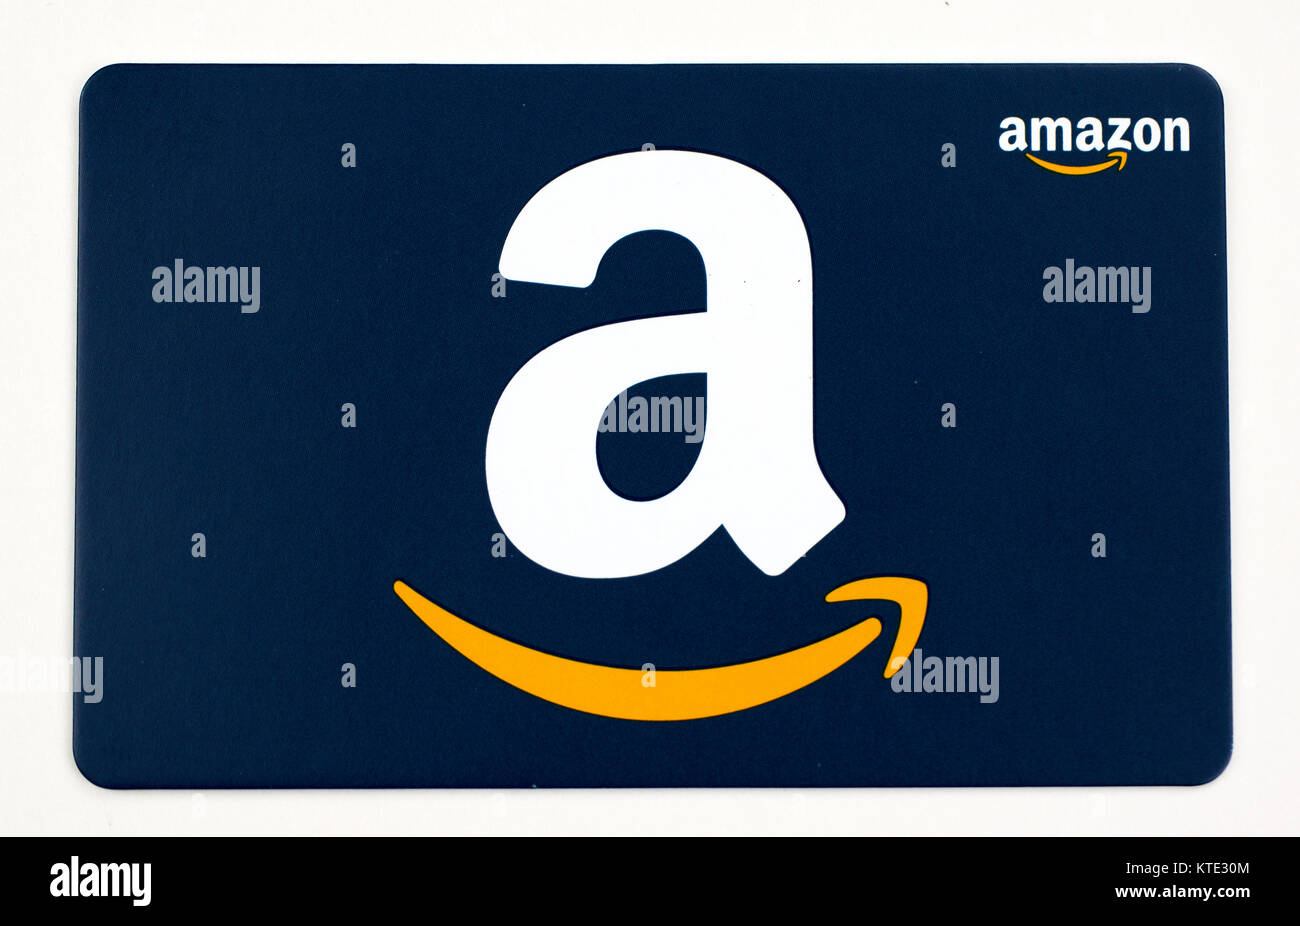 Amazon gift card -Fotos und -Bildmaterial in hoher Auflösung – Alamy